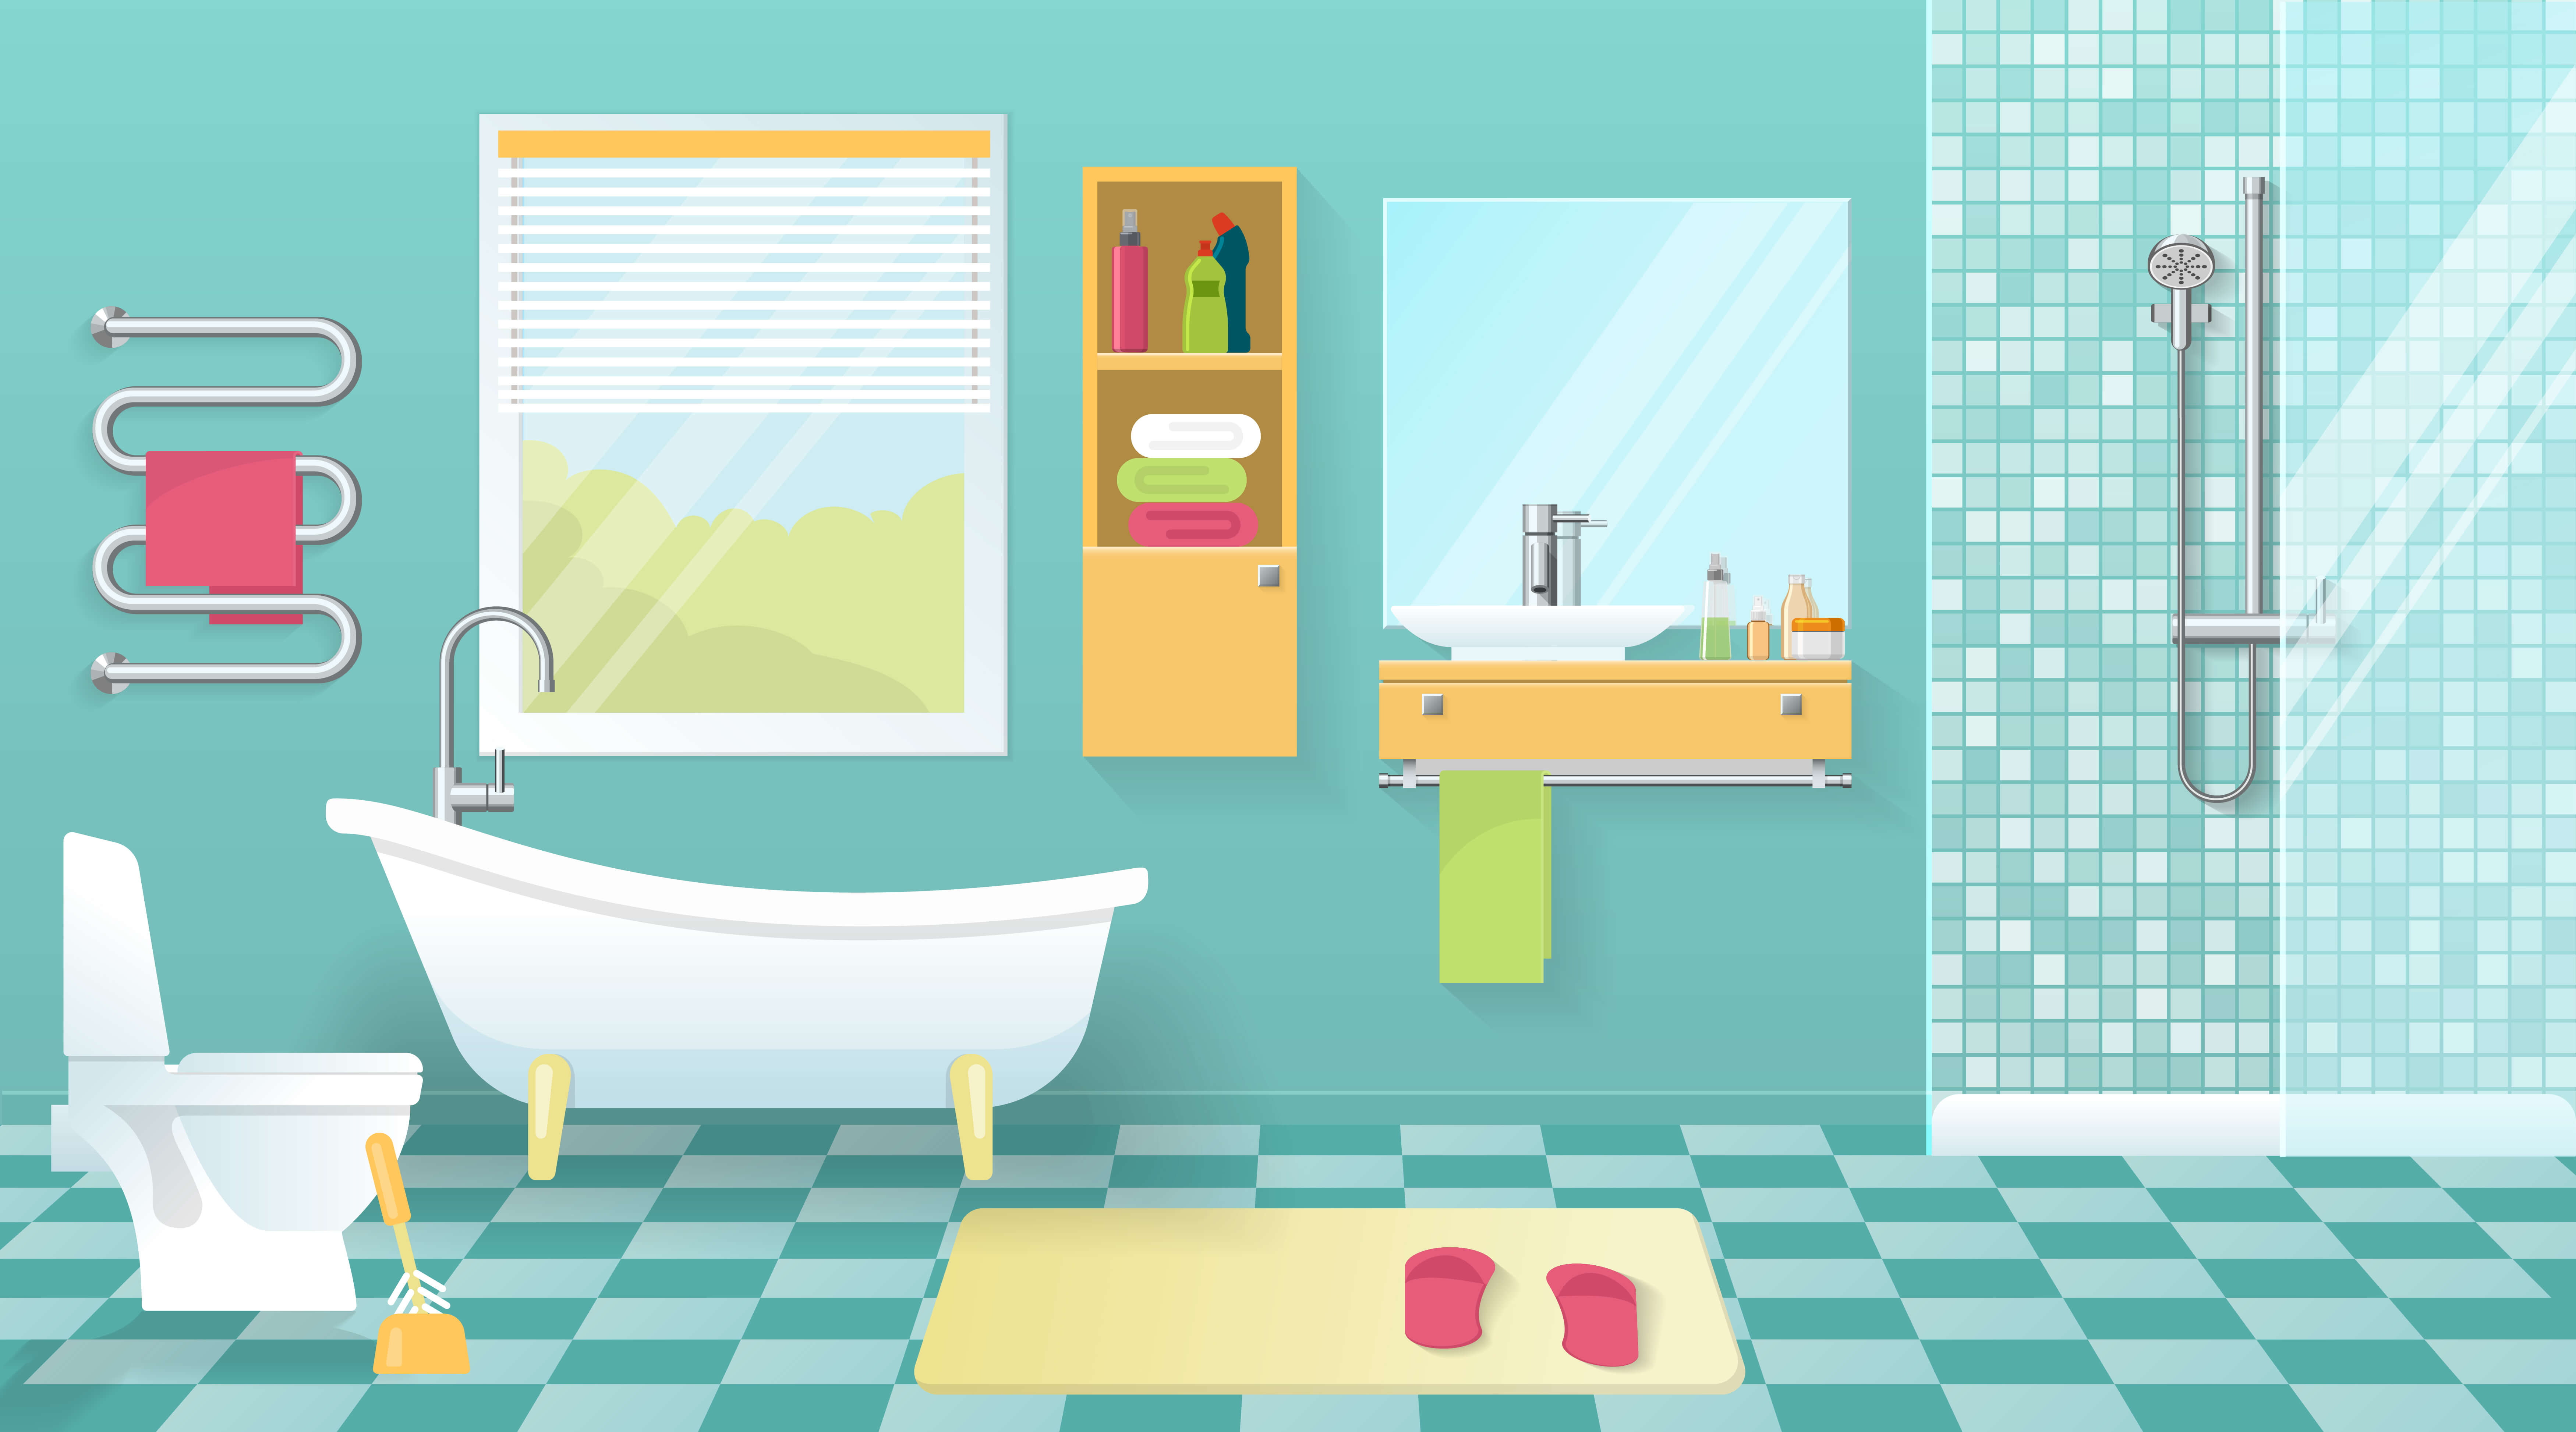 Bathroom Cleaning in 5 Easy Steps